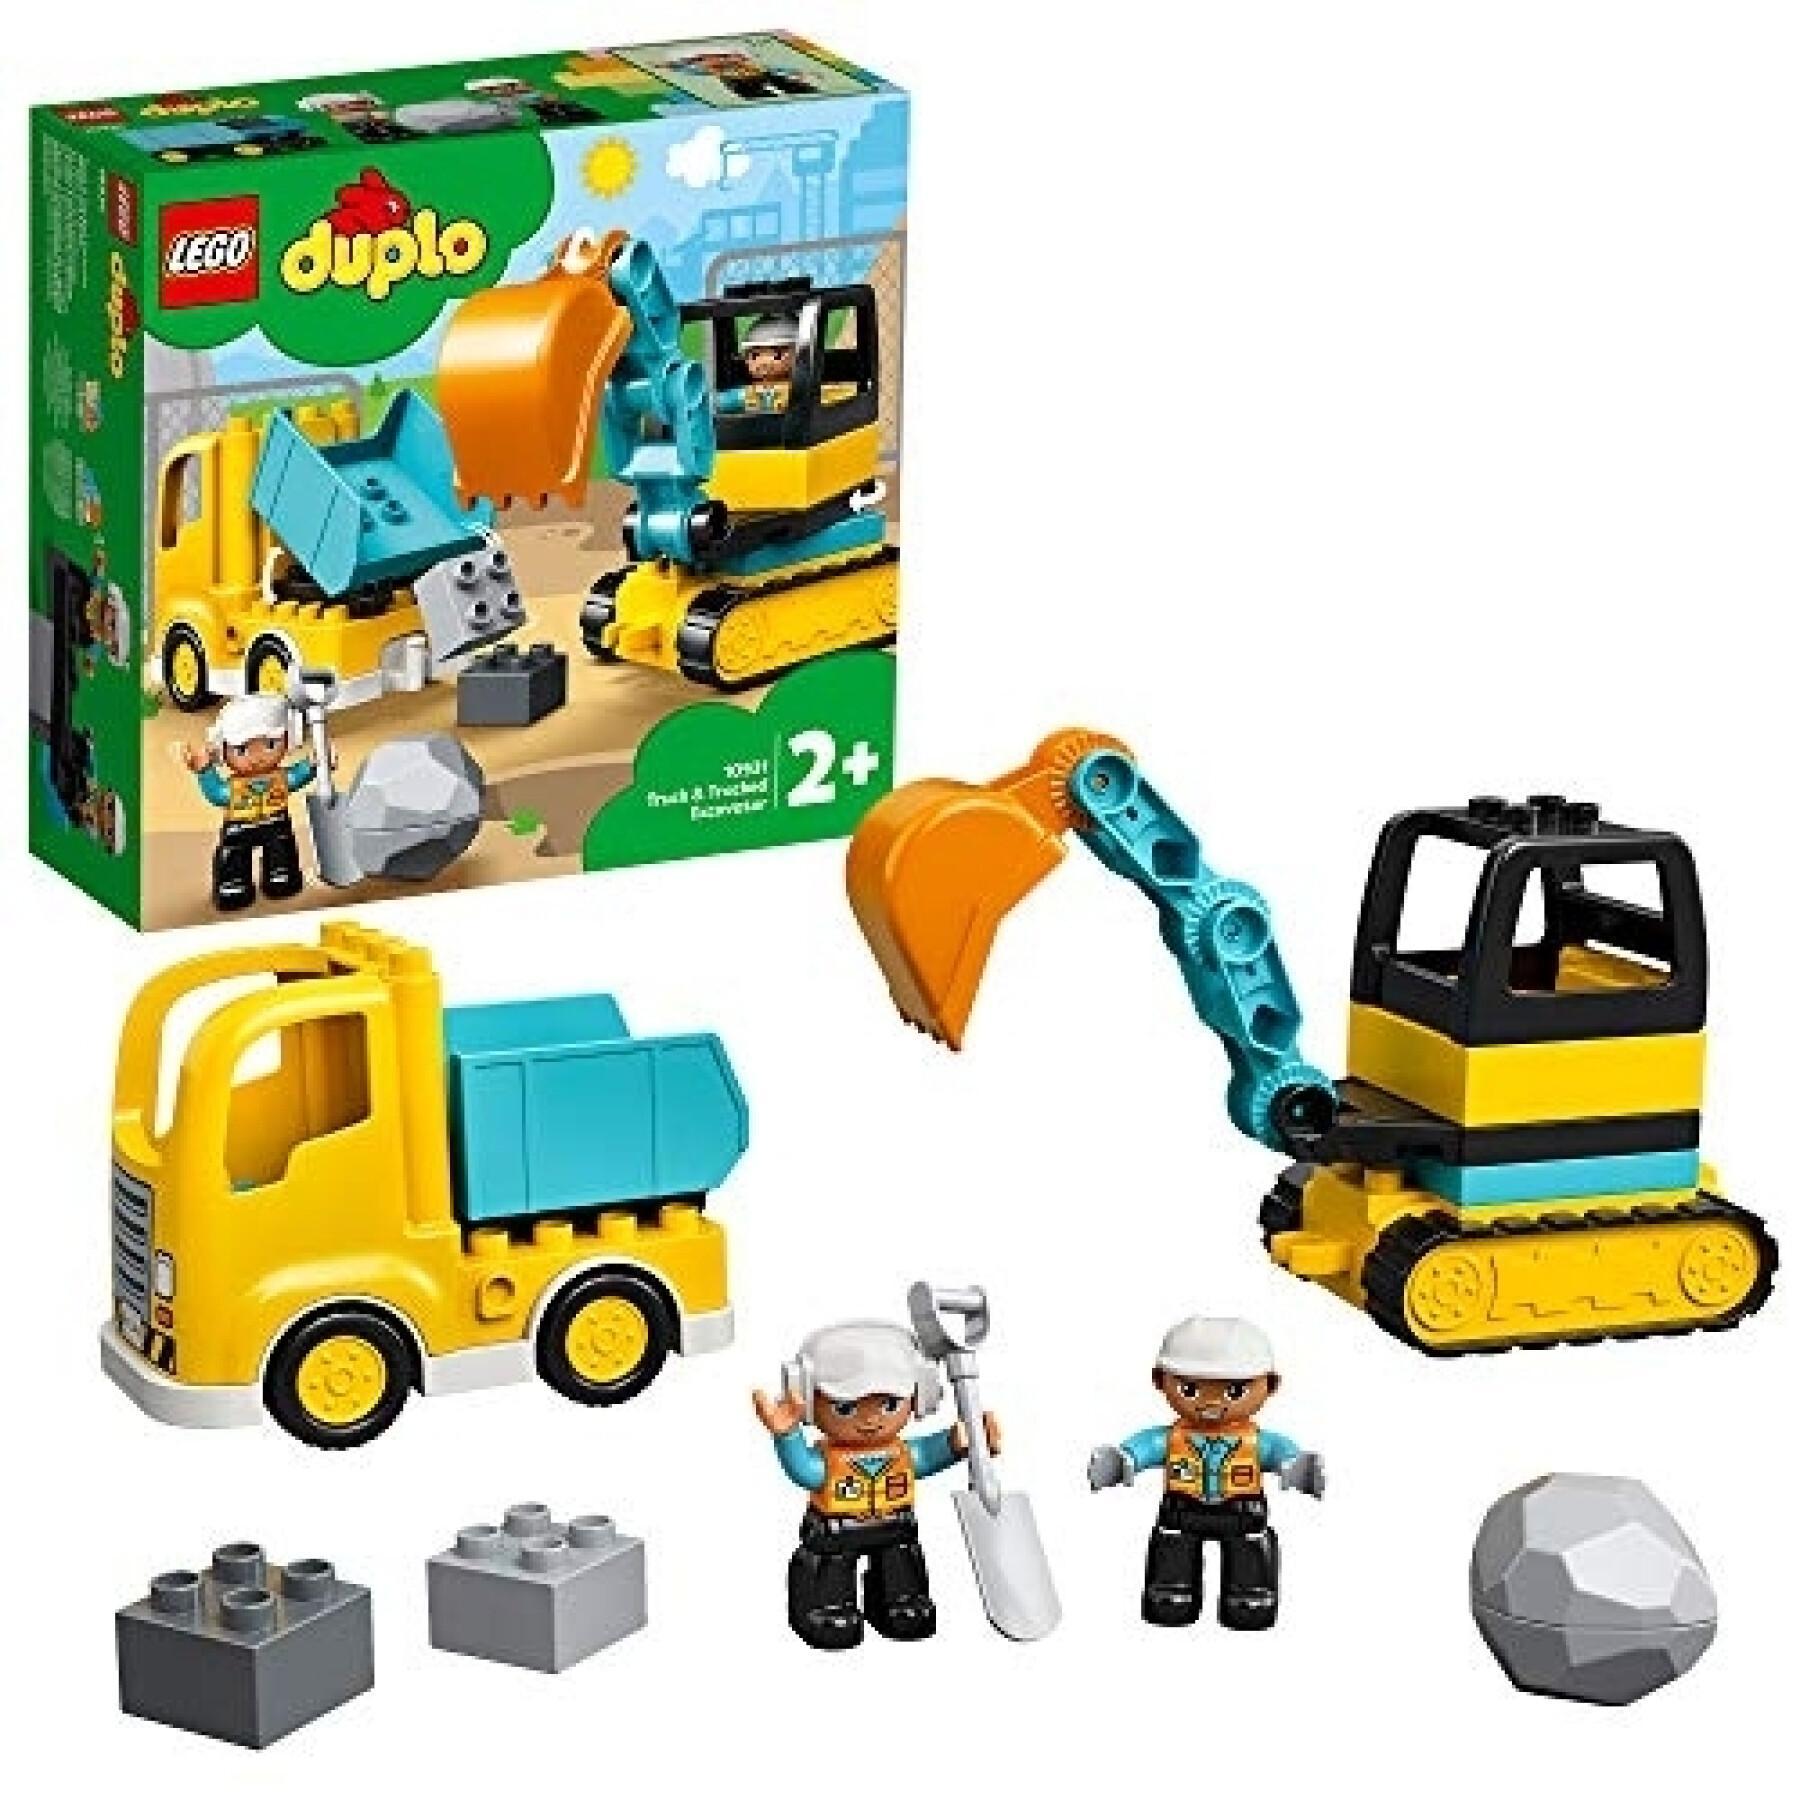 Truck + digger building sets Lego Duplo